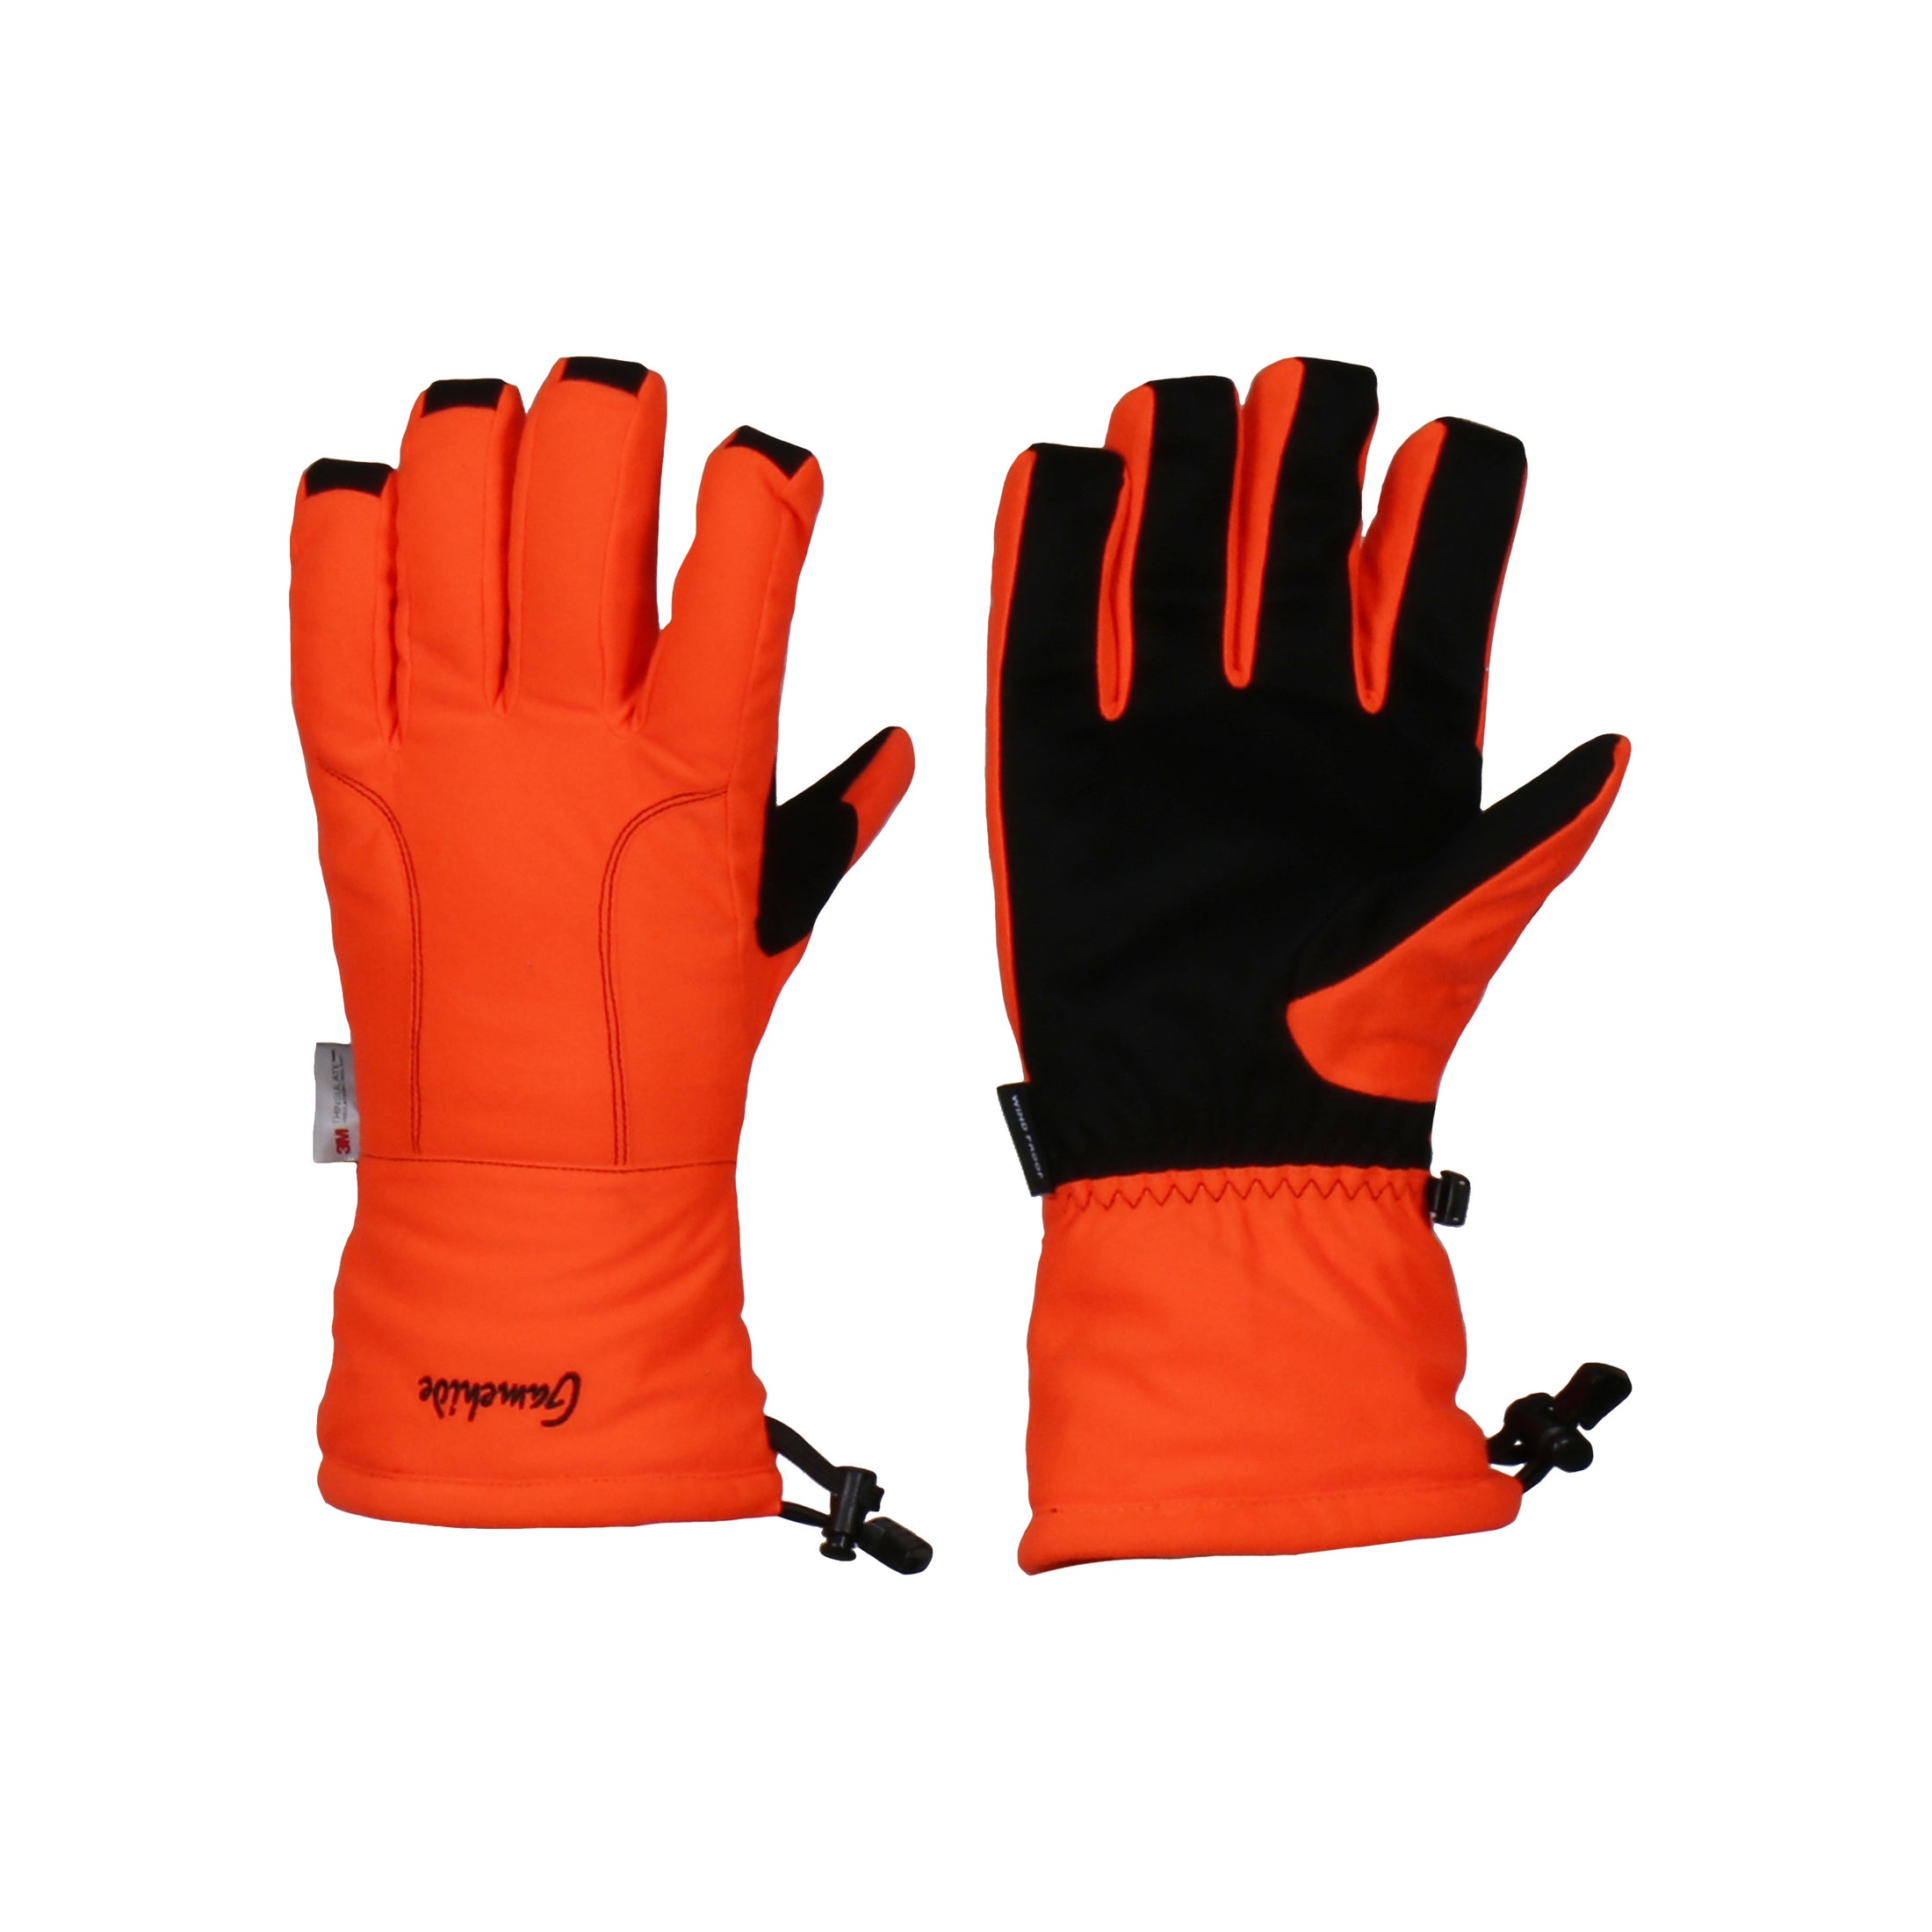 gamehide Day Break Glove (blaze orange)